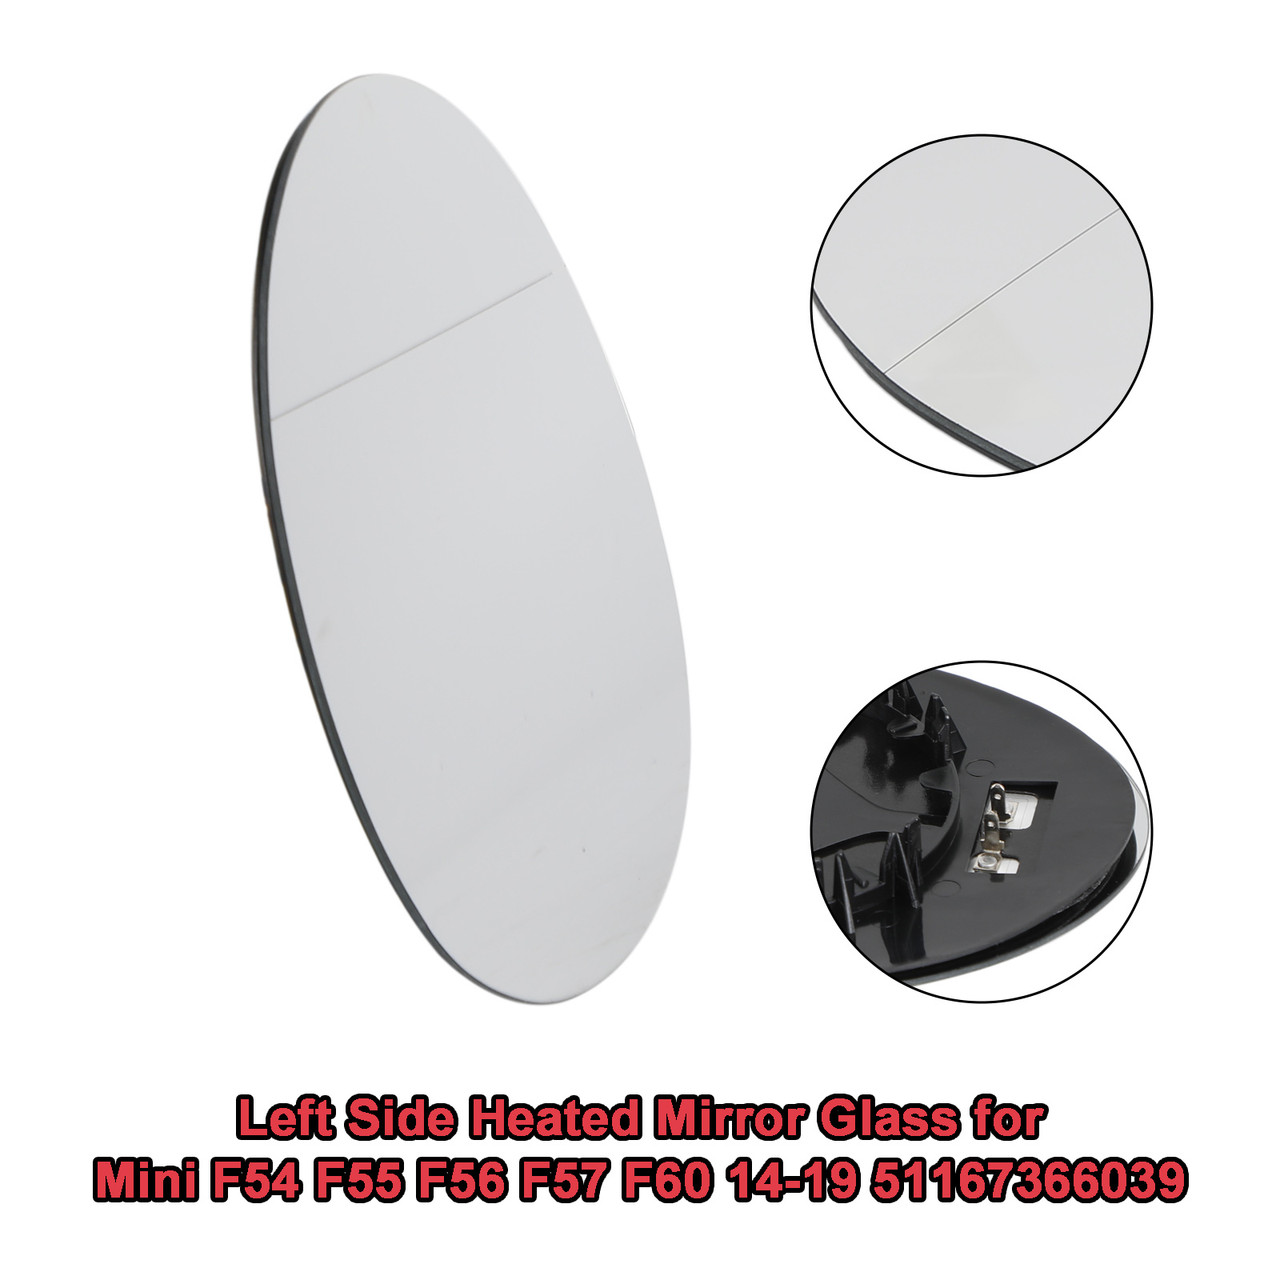 left Side Heated Mirror Glass for Mini F54 F55 F56 F57 F60 14-19 51167366039